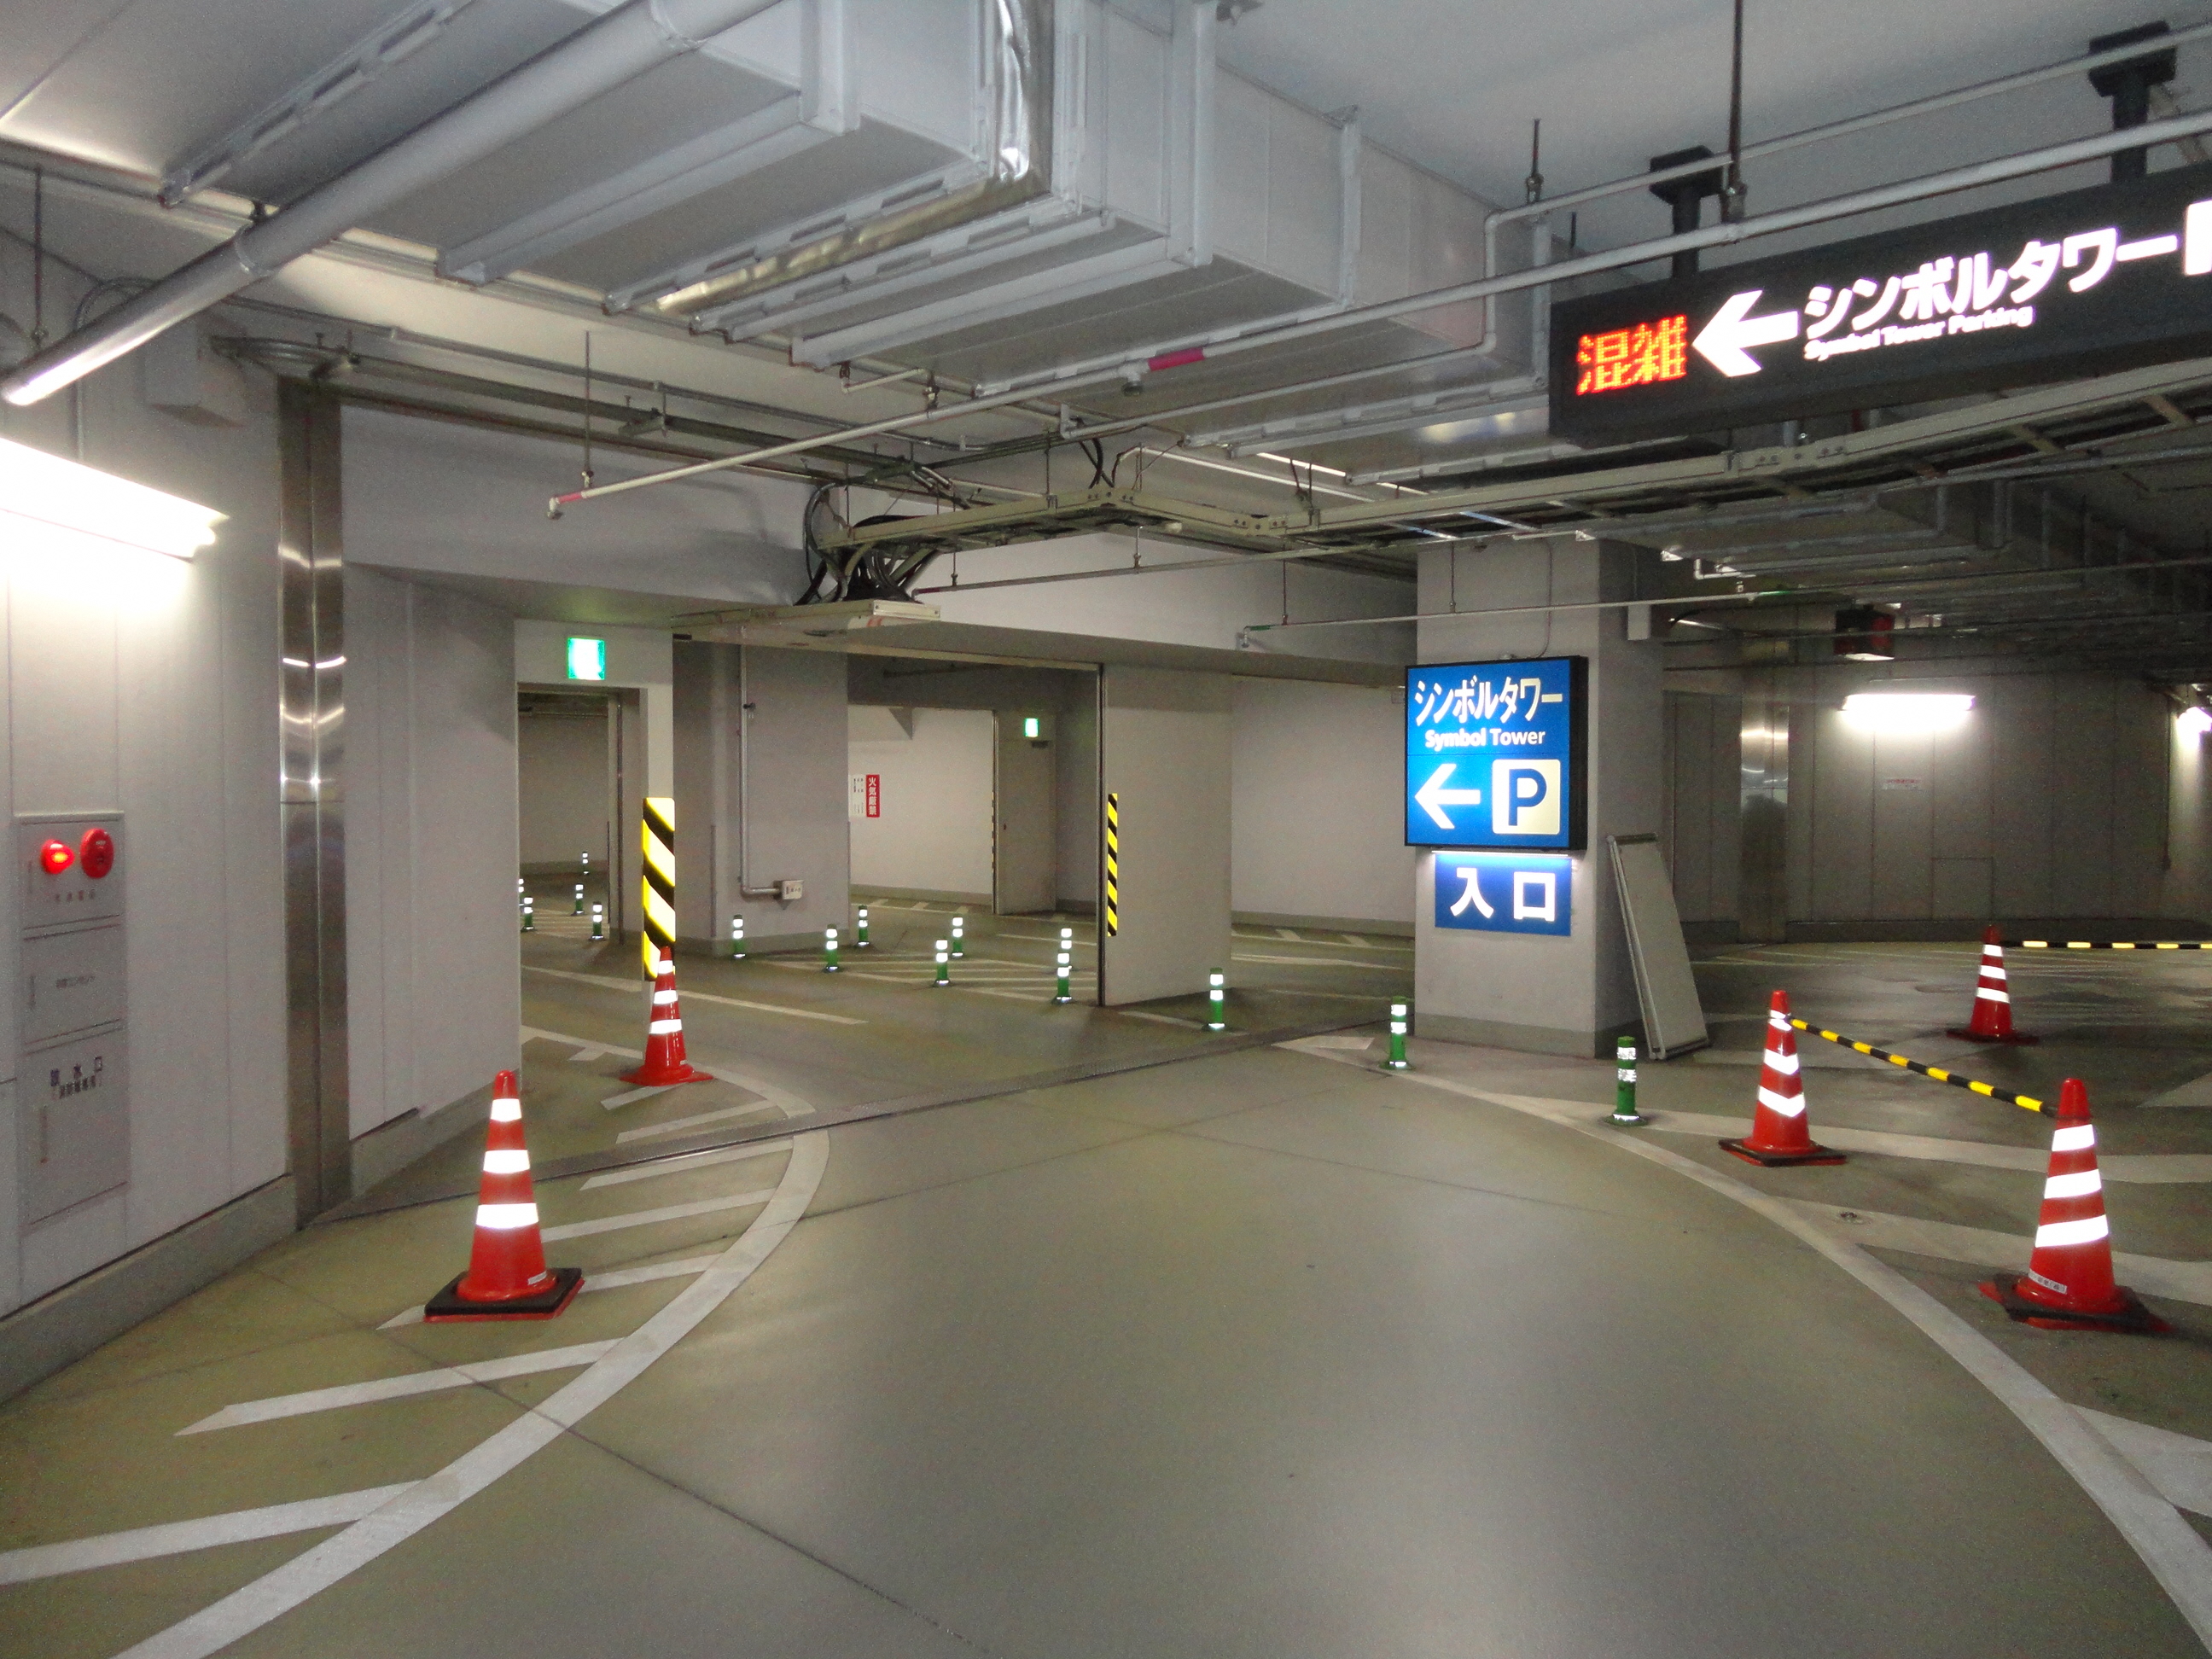 高松市立高松シンボルタワー地下駐車場 たかまつユニバーサルデザインマップ